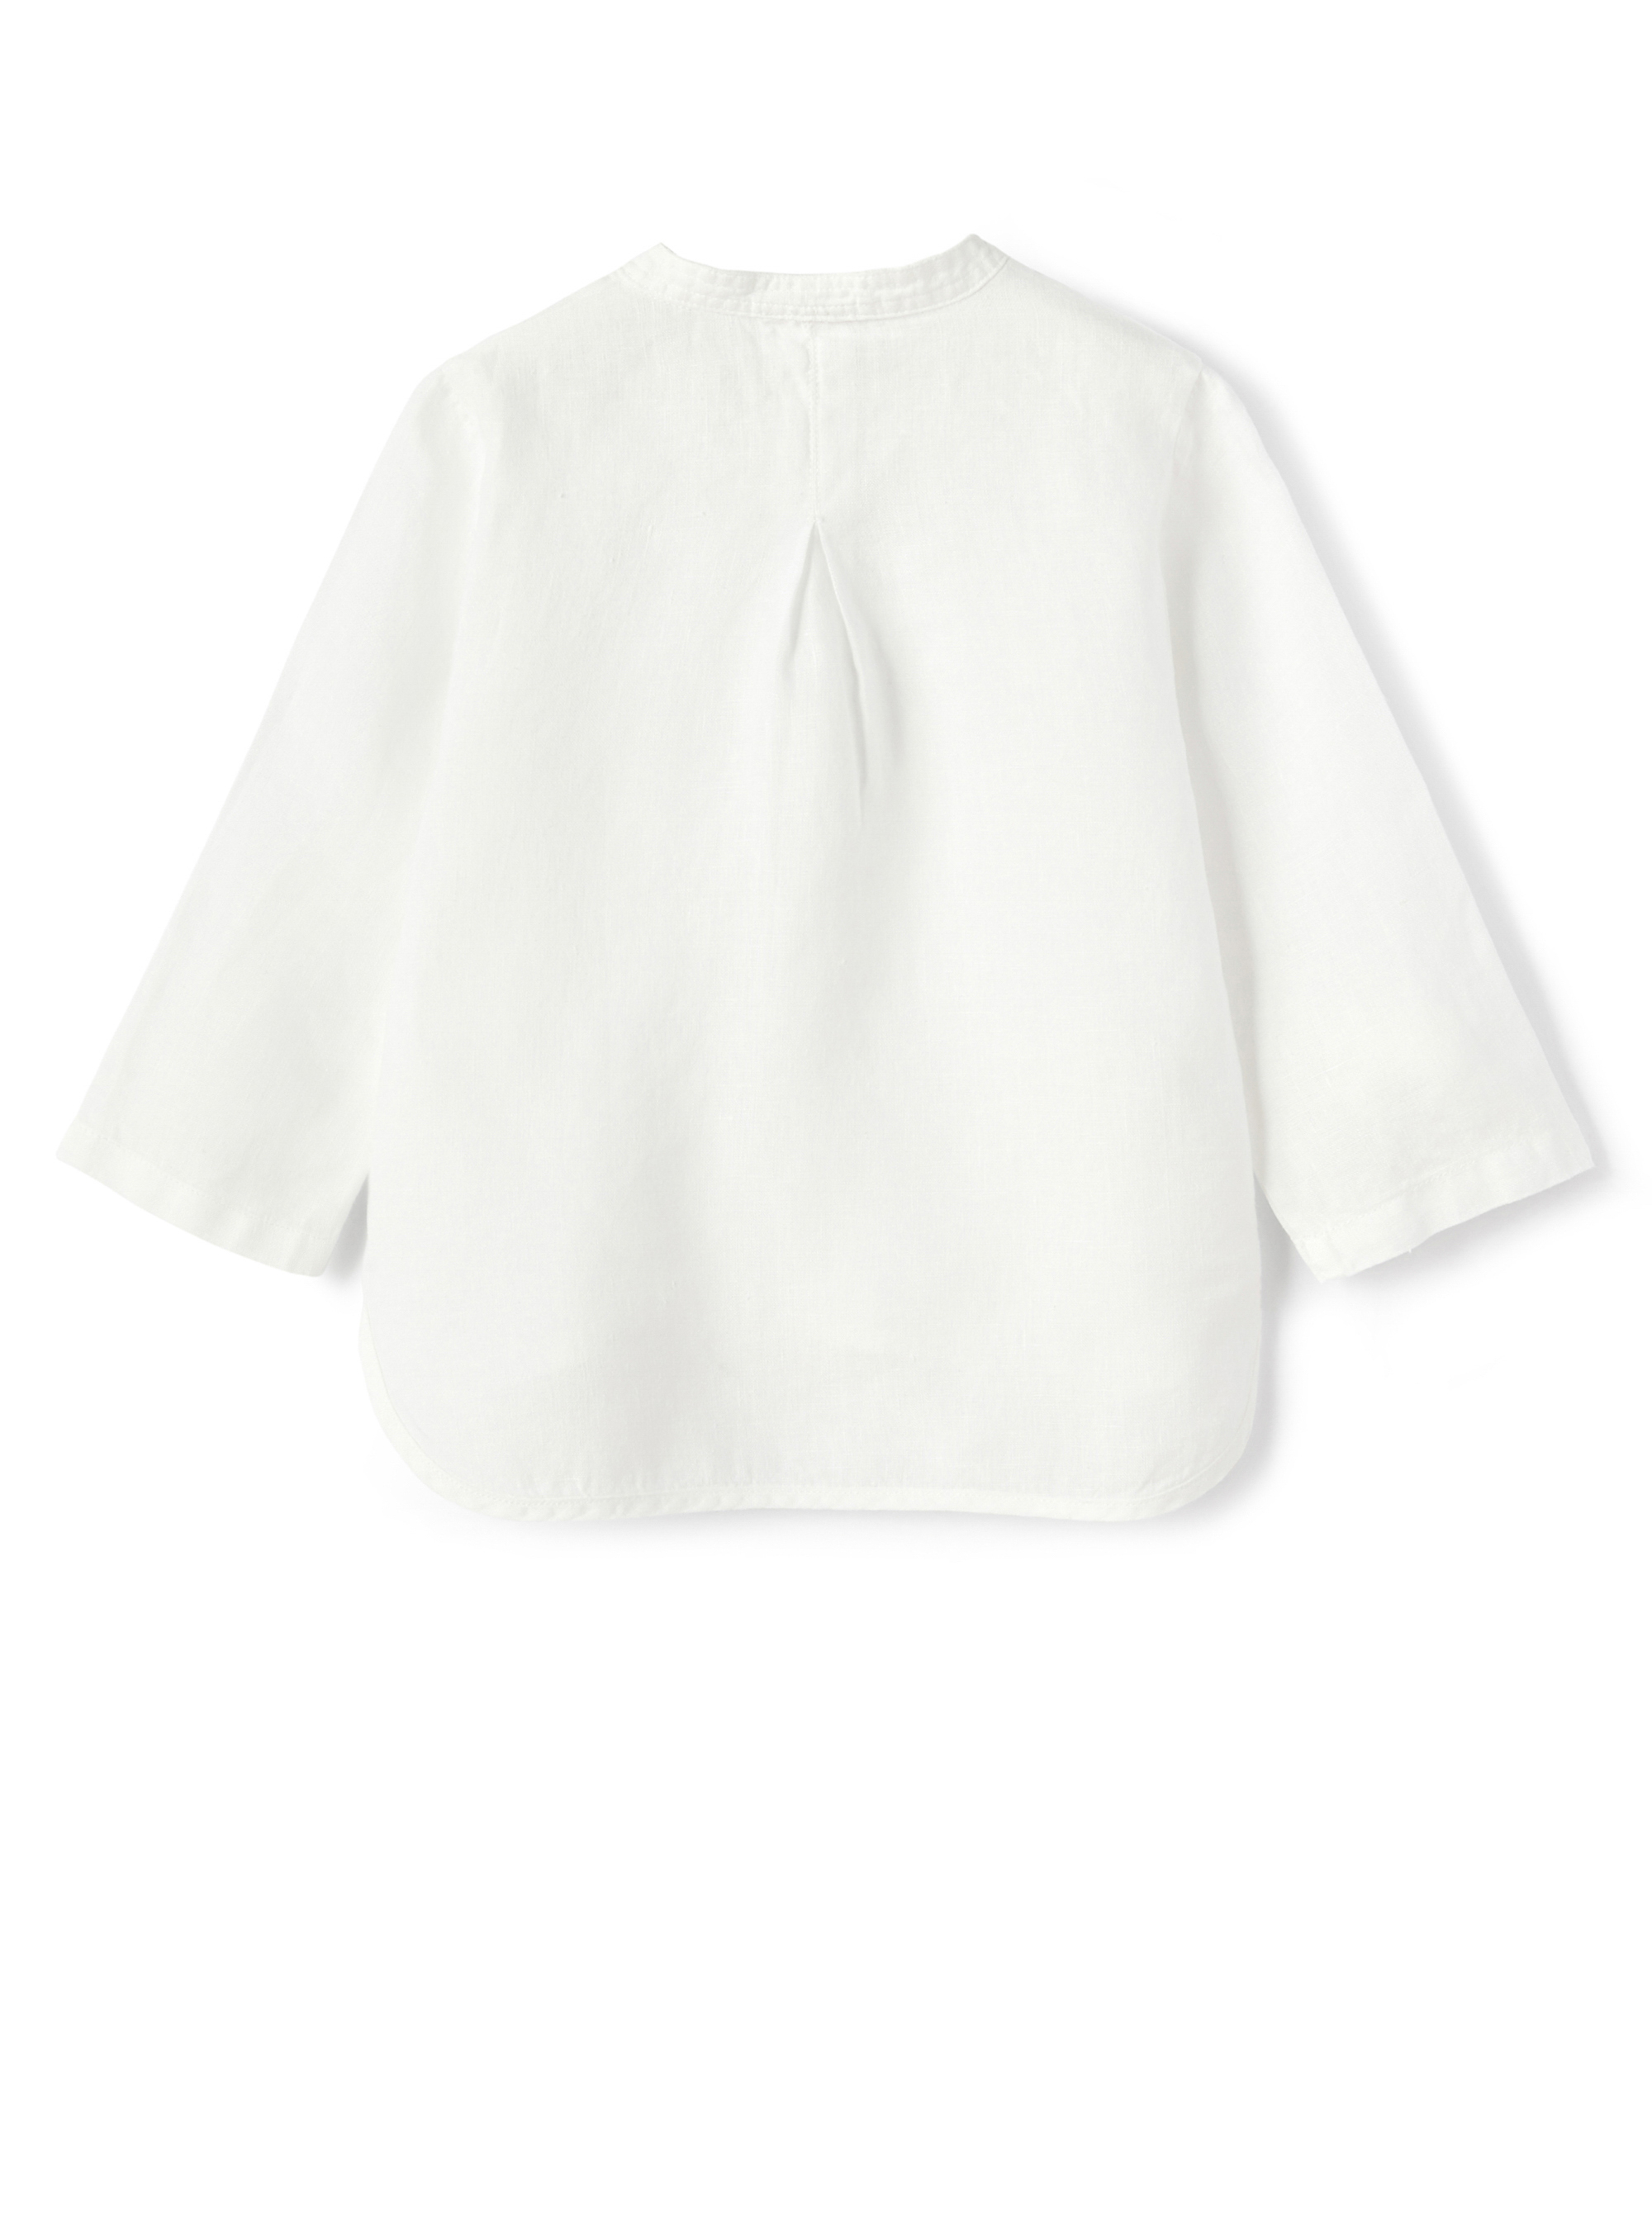 100% white linen guru shirt - White | Il Gufo